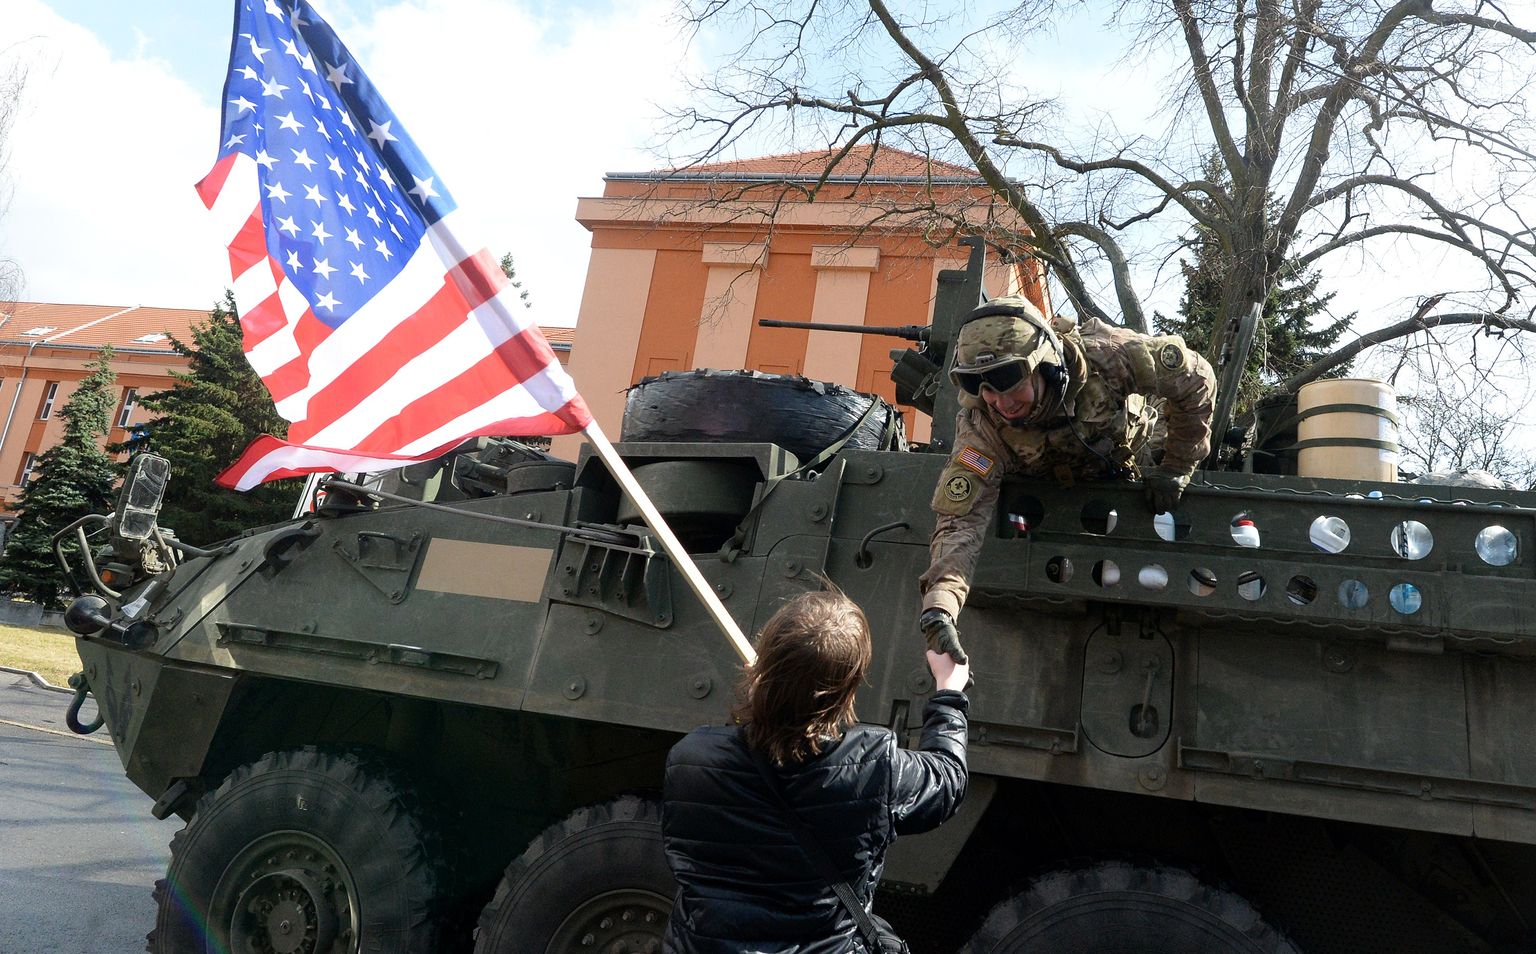 USA sõdur surub kätt Tšehhi elanikult, kes hoiab USA lippu, 30. märtsil 2015. USA sõjaväekolonn, mis alustas liikumist Baltimaadest ja lõpetas Saksamaal, sai teel paljude kohalike tervituse osaliseks. Pilt on illustratiivne.